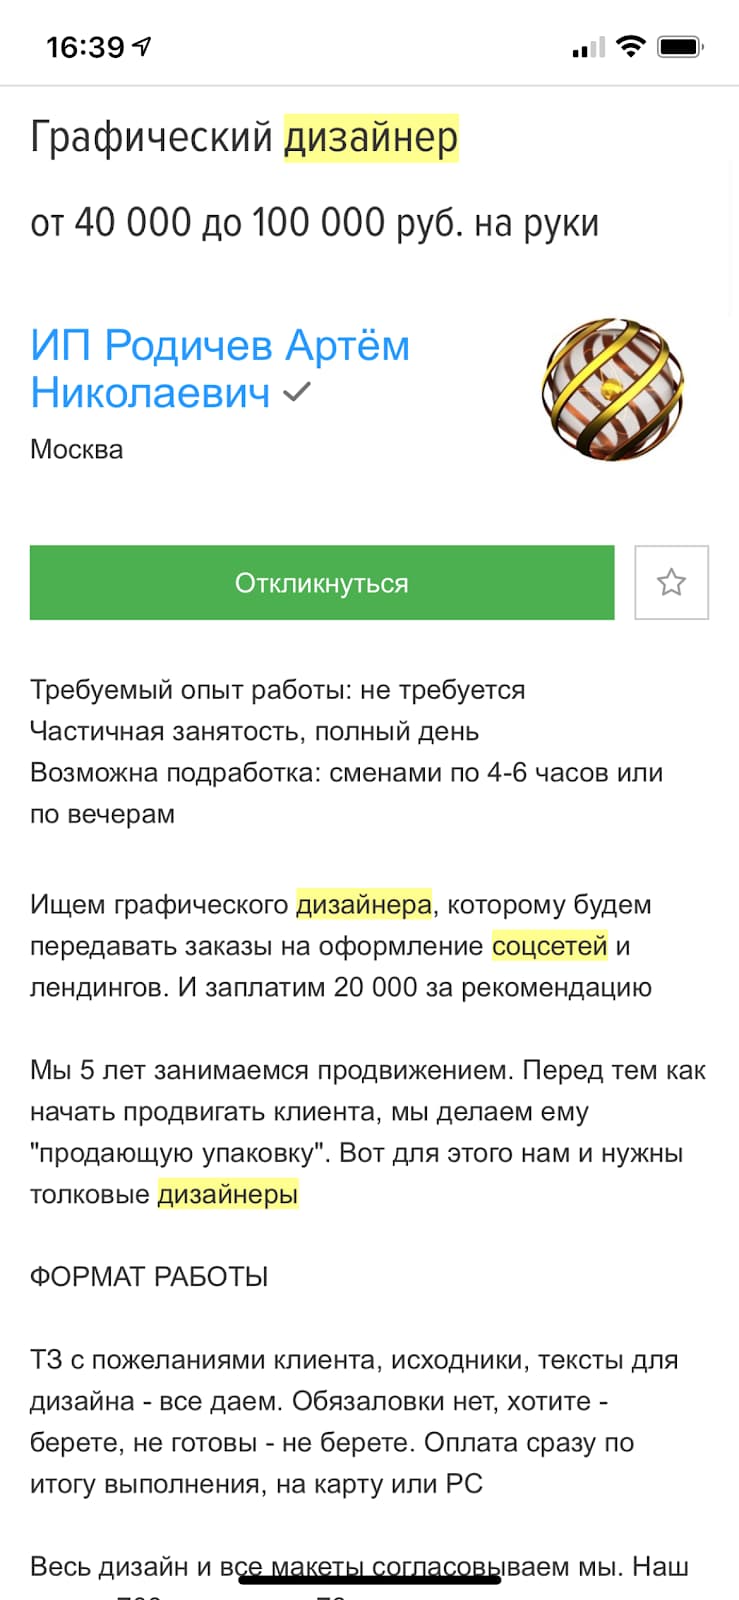 Примеры вакансий дизайнера для оформления социальных сетей на сайте hh.ru